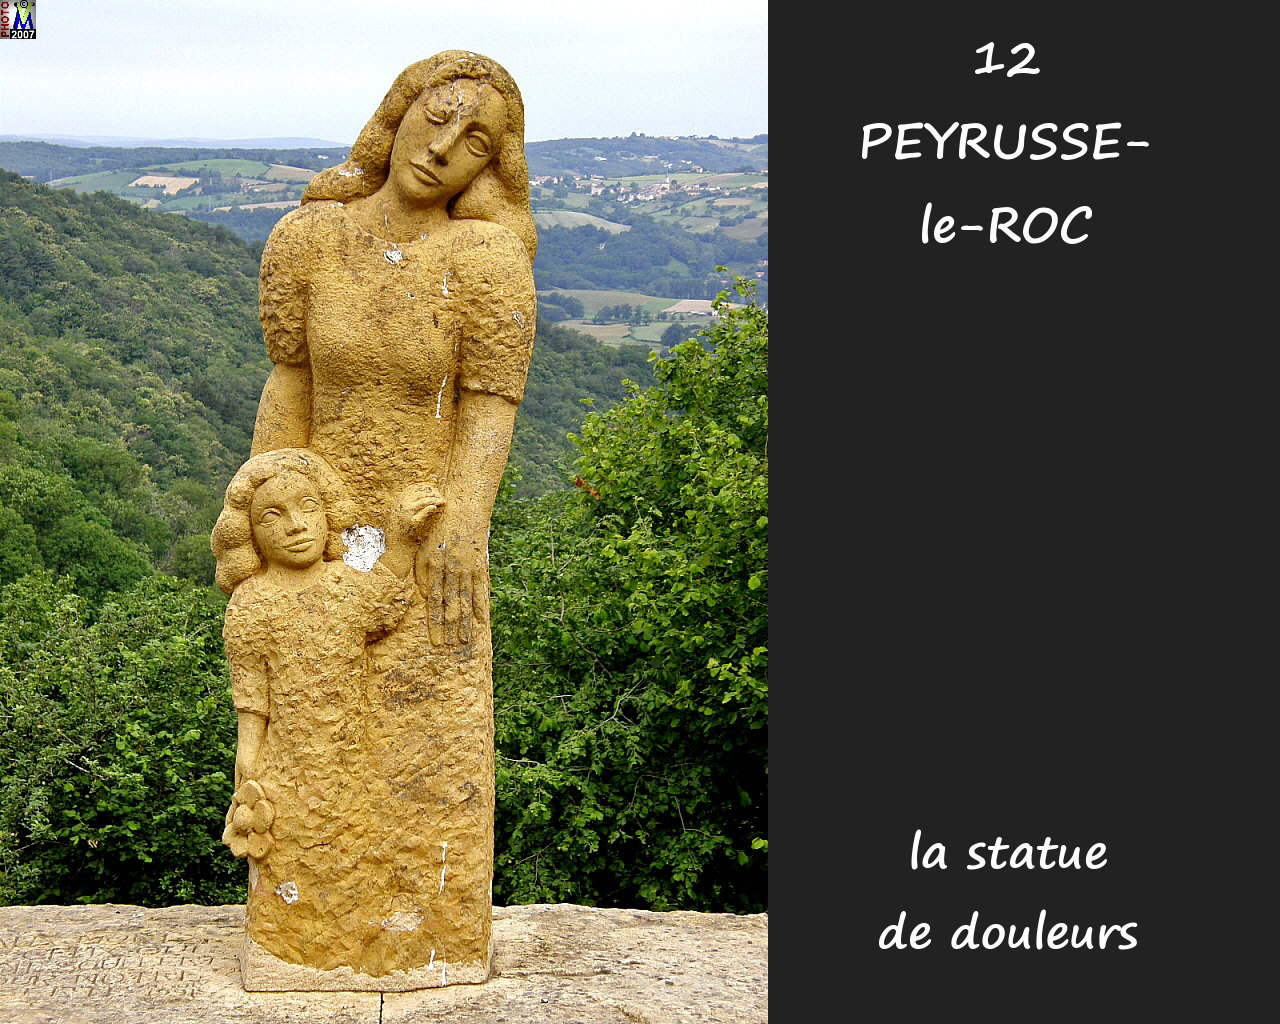 12PEYRUSSE-ROC_village-statue_100.jpg